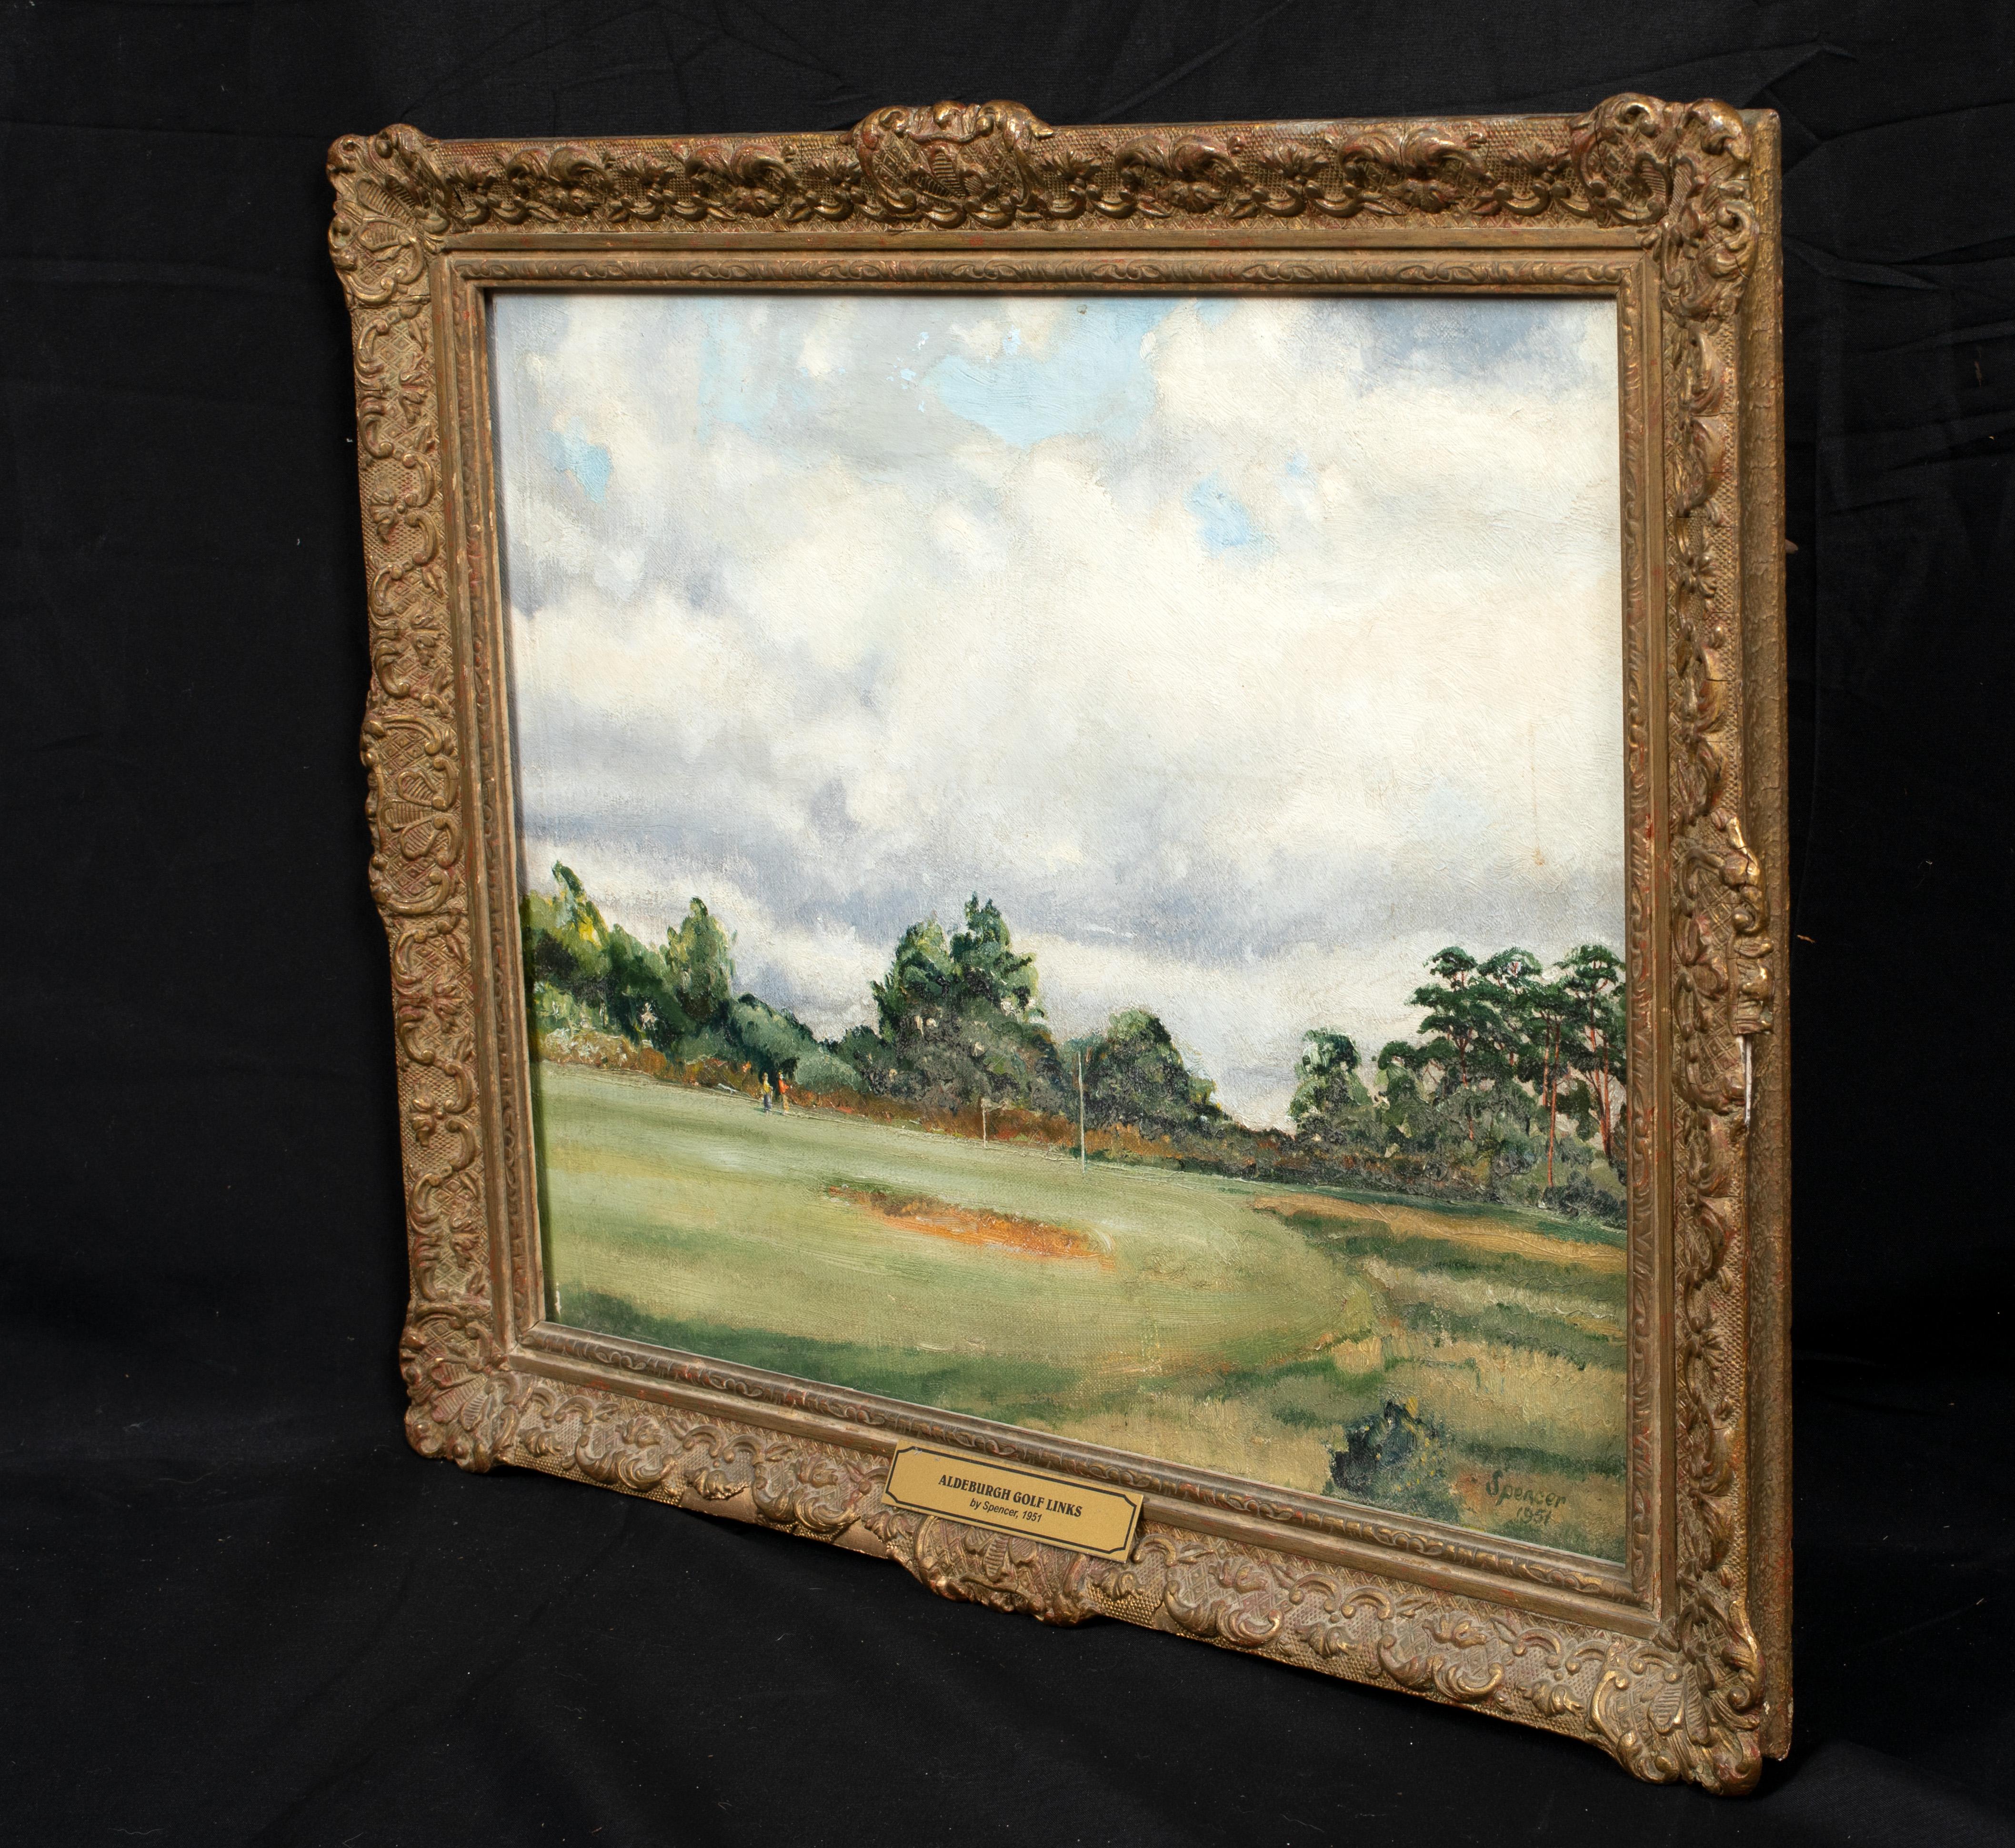 Portrait d'un terrain de golf d'Aldeburgh, daté de 1951

École d'anglais signée Spencer

vue du 20e siècle d'un personnage jouant au golf à Aldeburgh Golf Course, Suffolk, huile sur toile de Spencer. Excellente qualité et condition de la vue